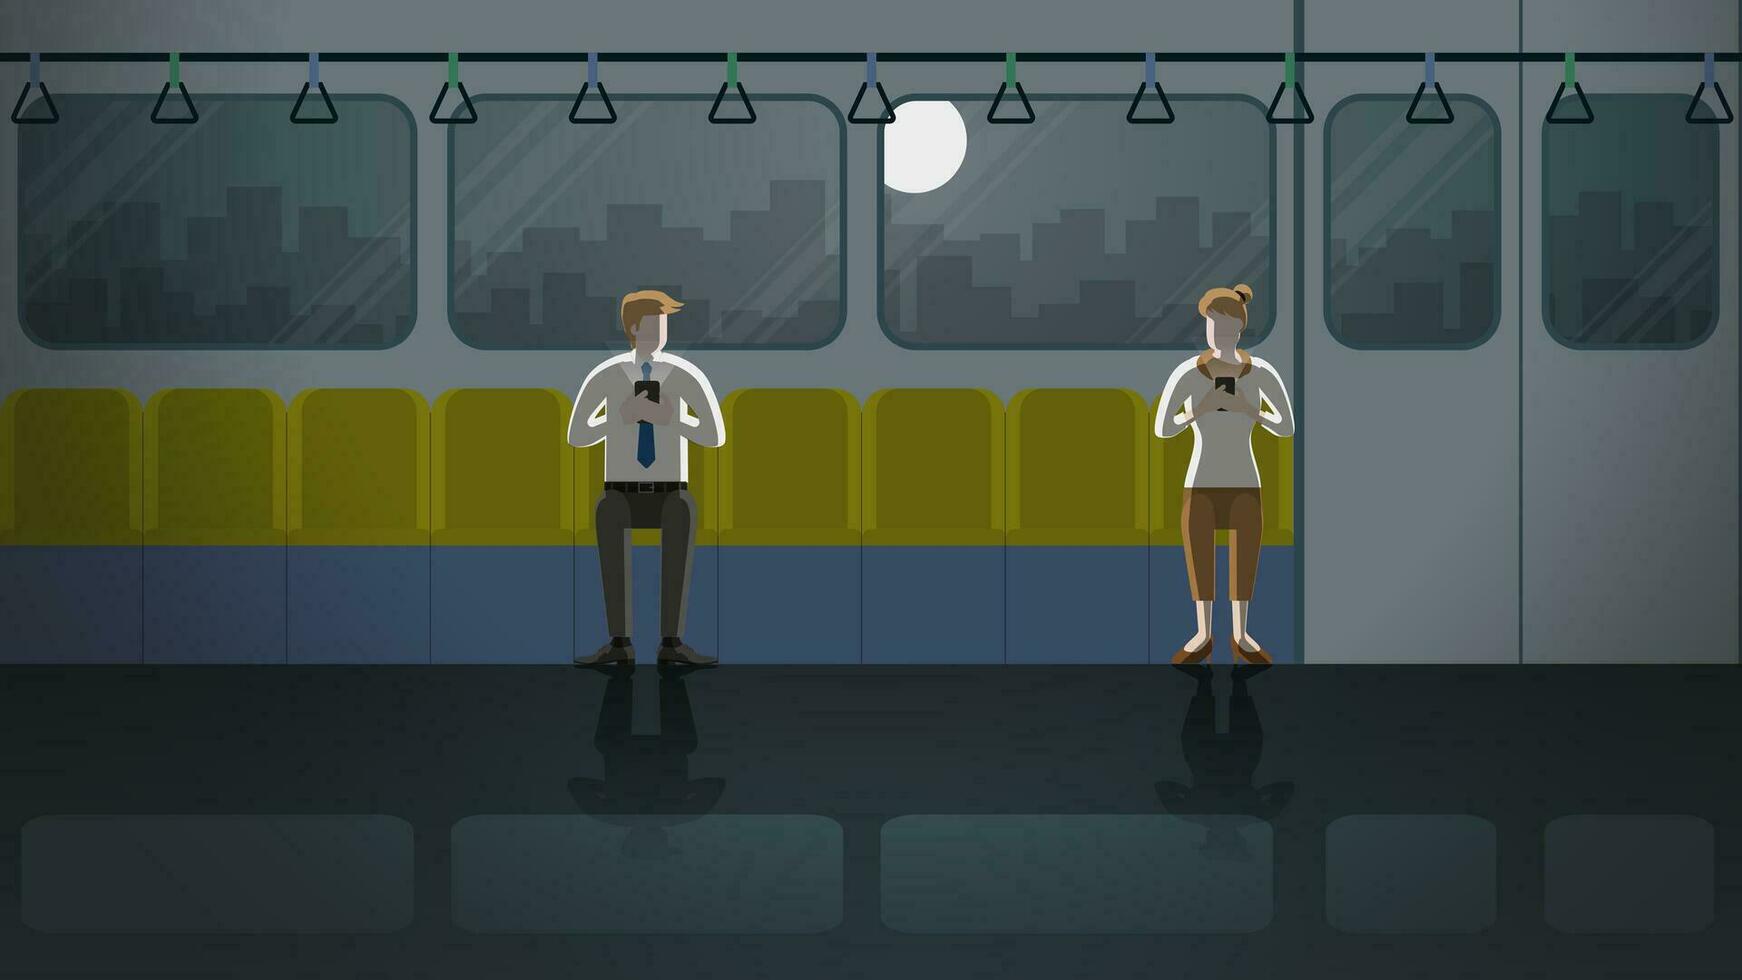 amor a primero visión Entre hombre y mujer en tren público transporte vector